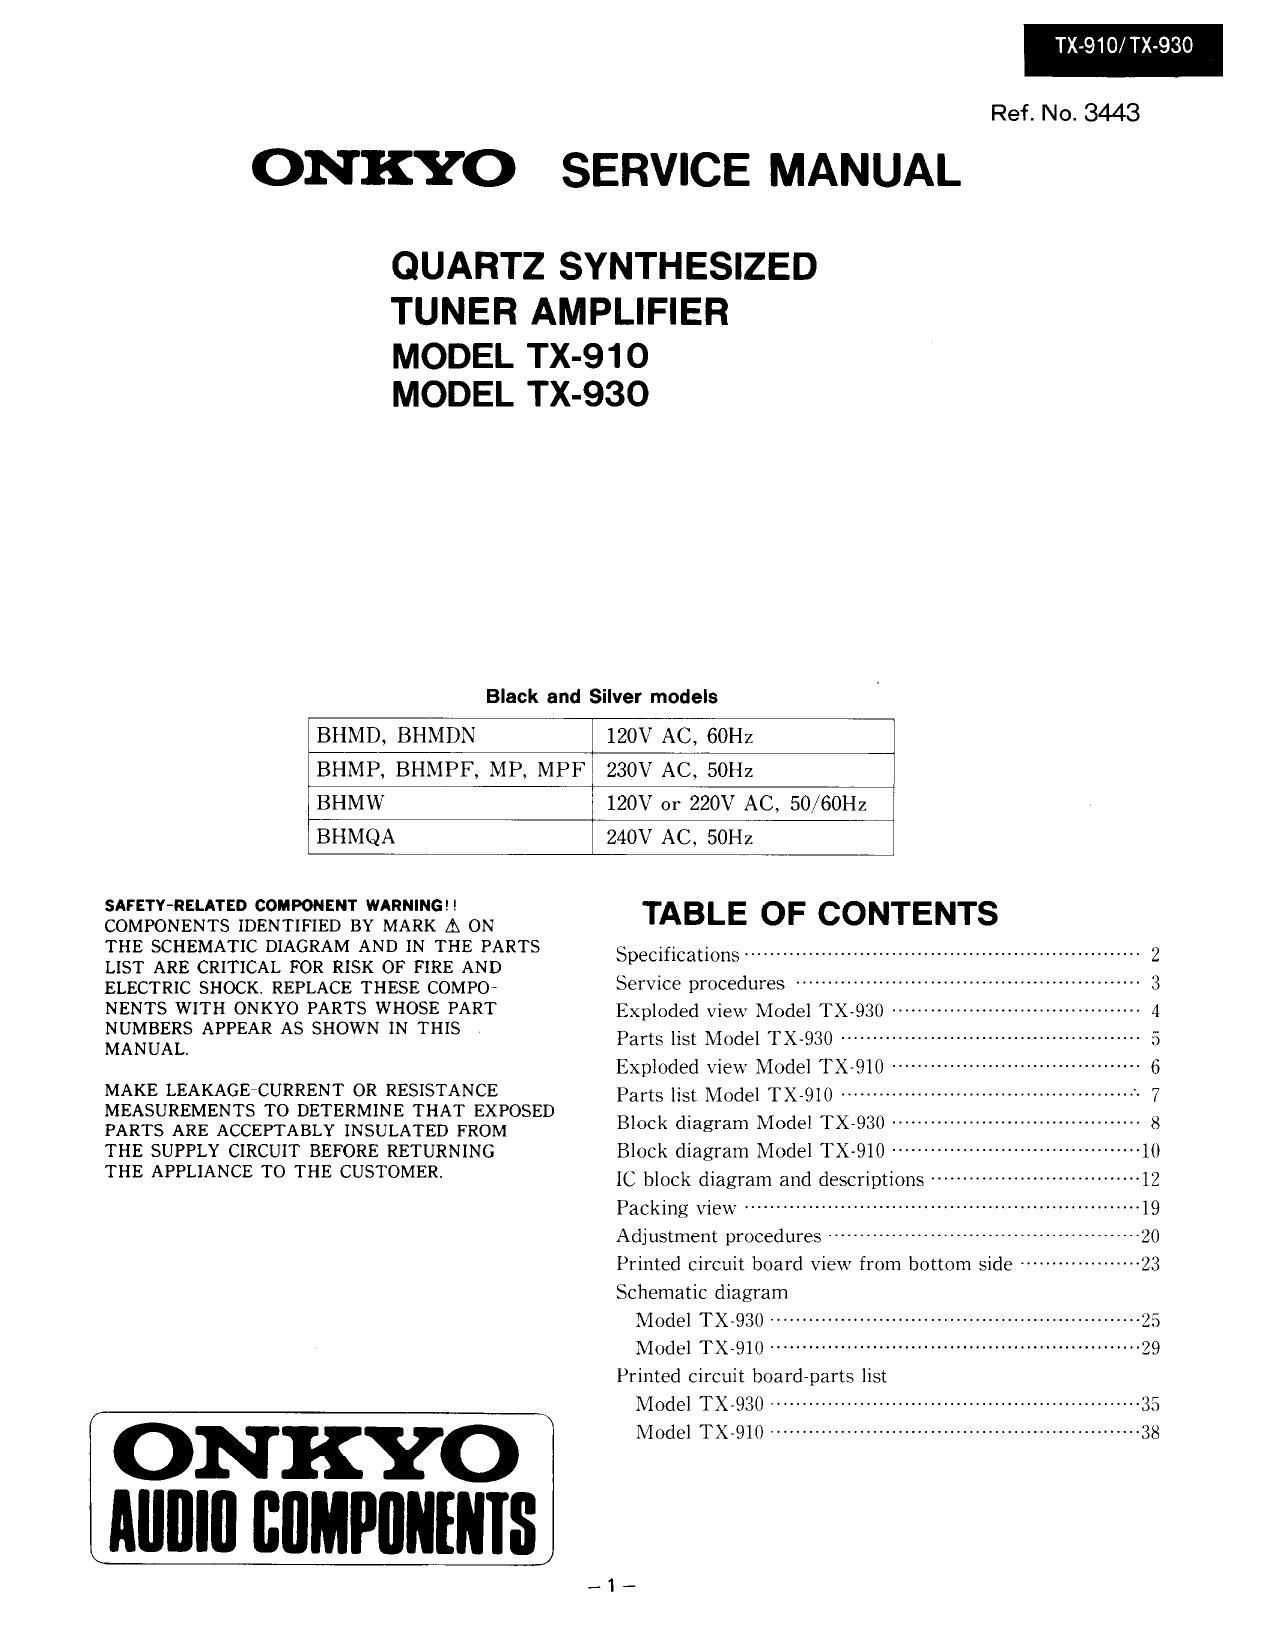 Onkyo TX 930 Service Manual